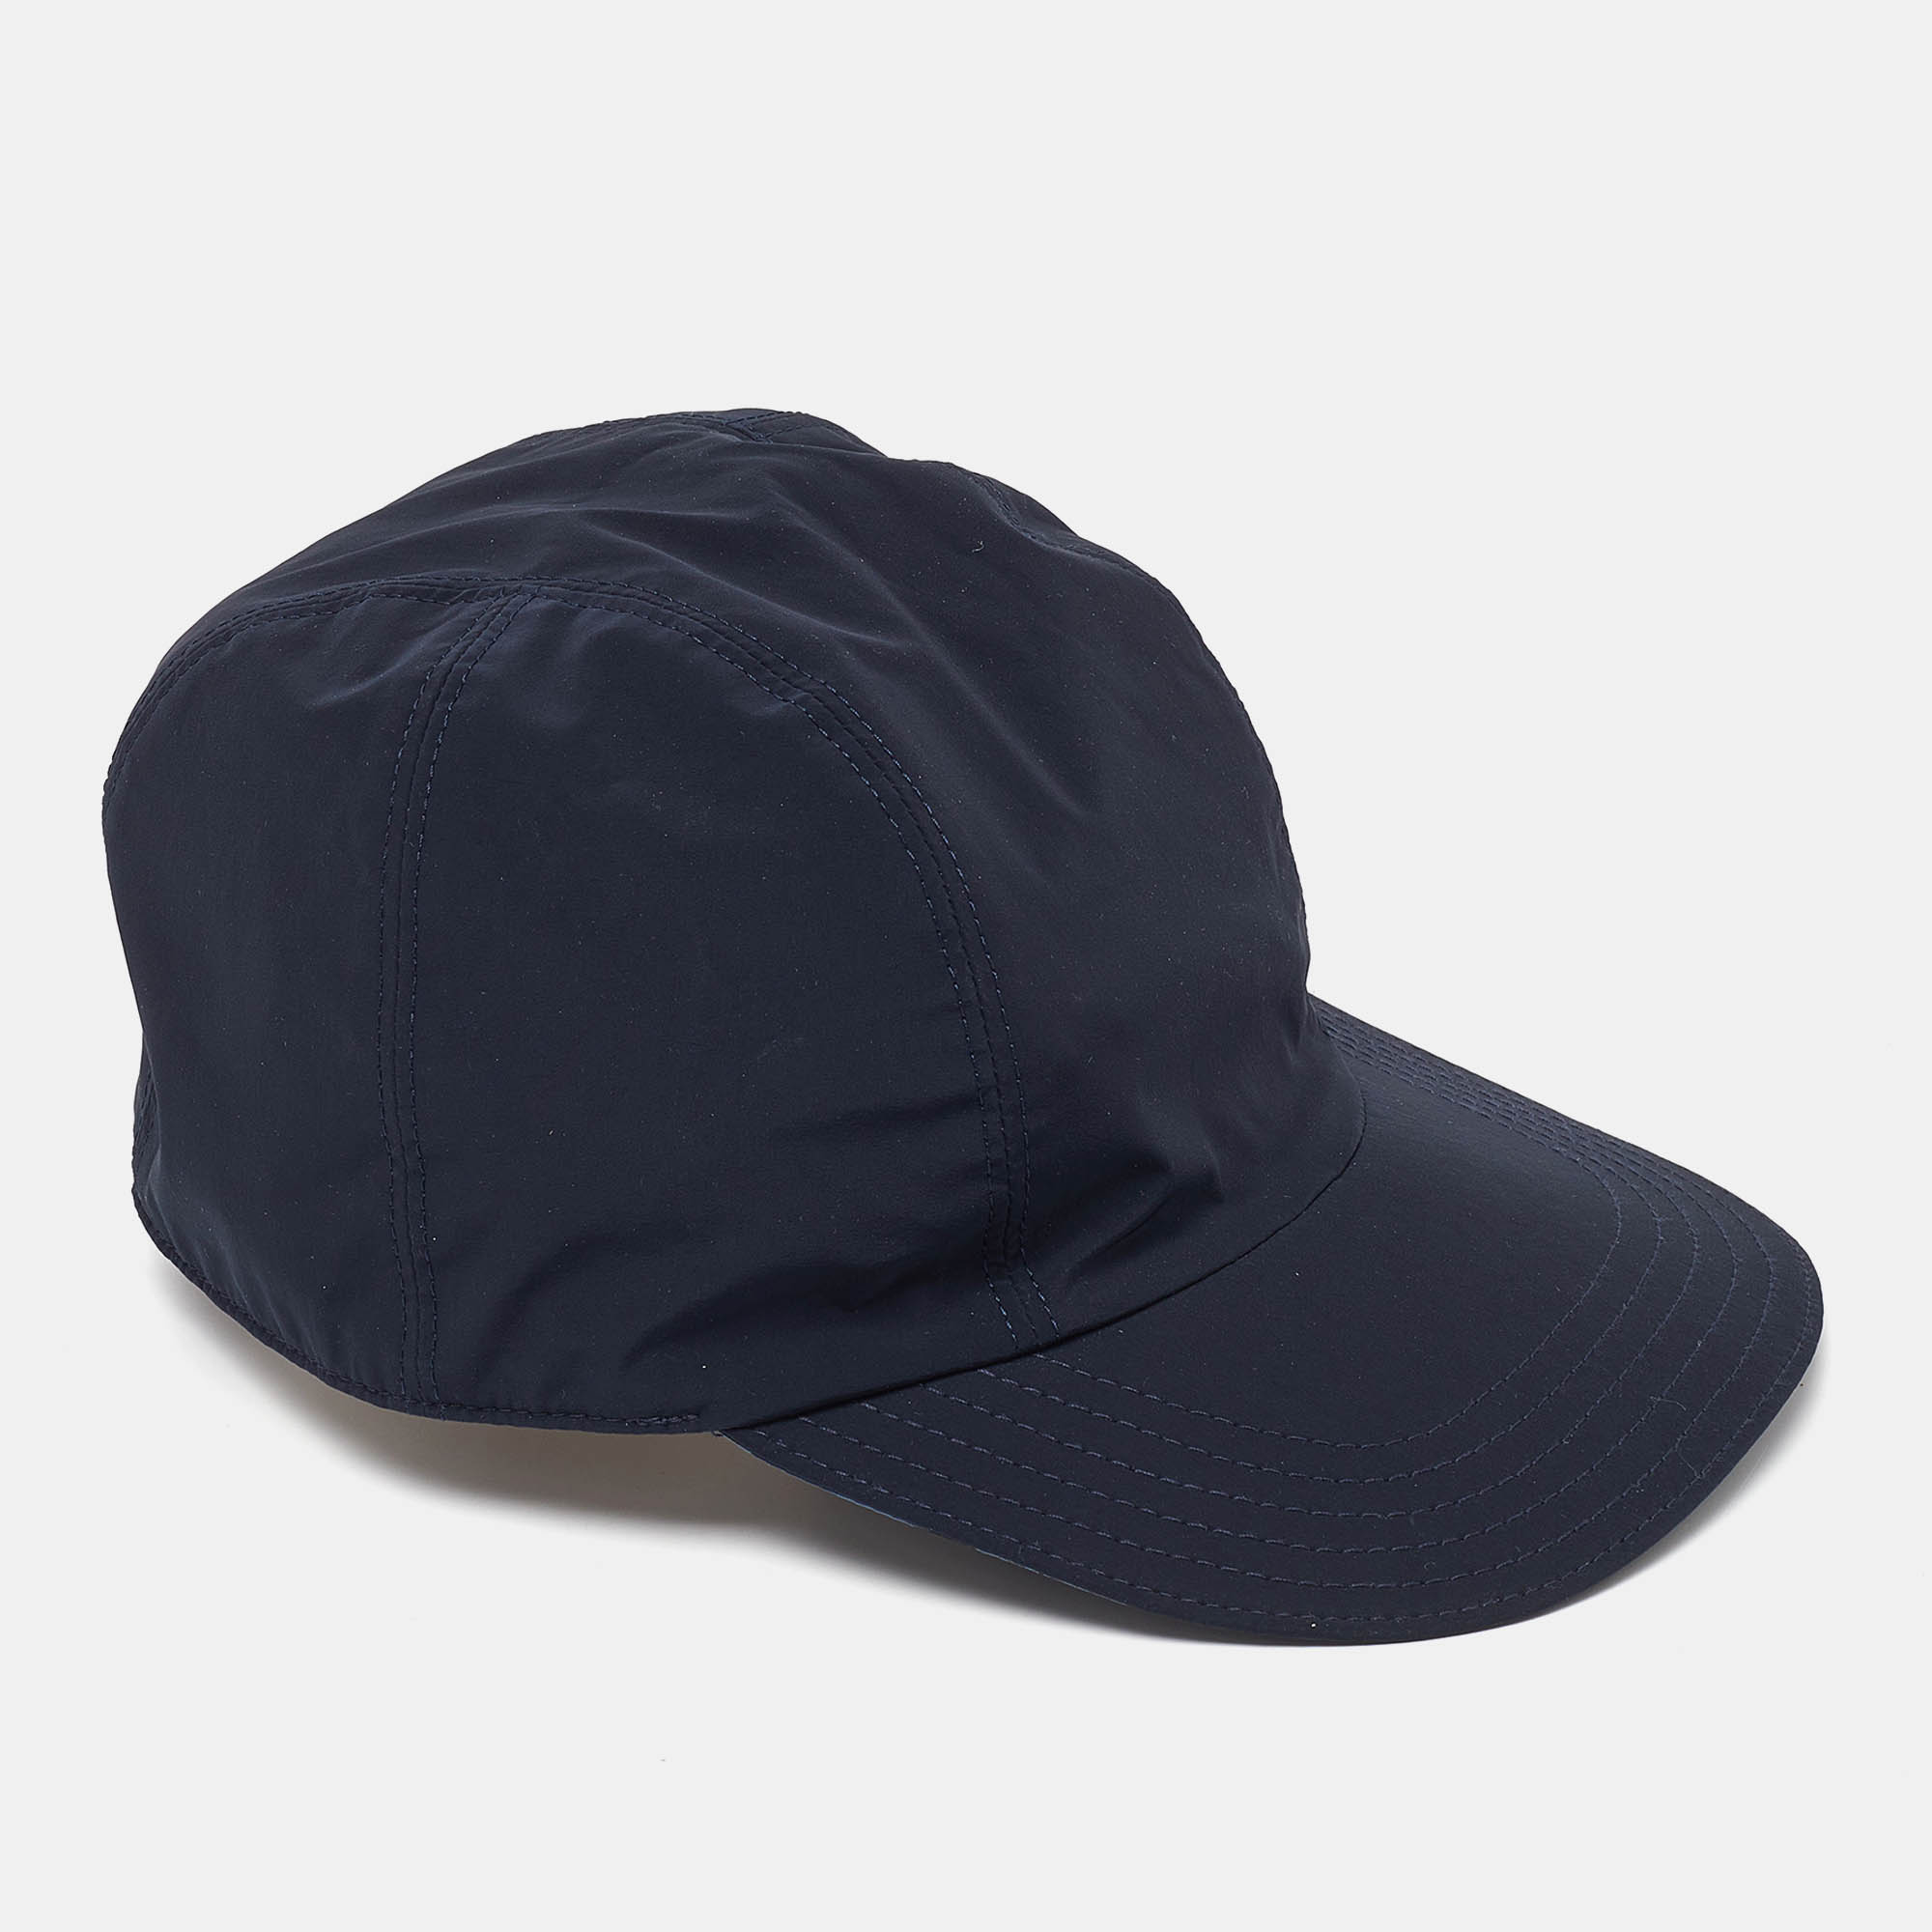 Hermes navy blue printed nylon reversible roger cap m